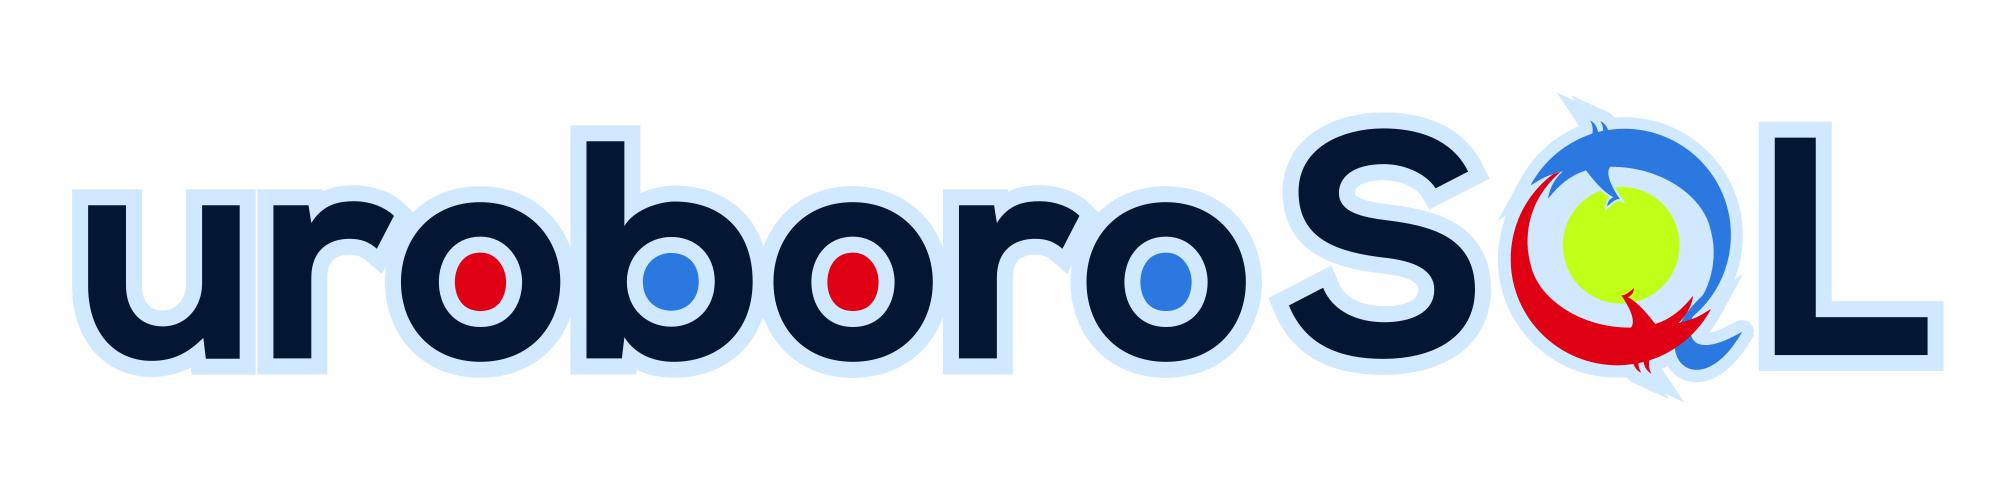 uroboroSQL